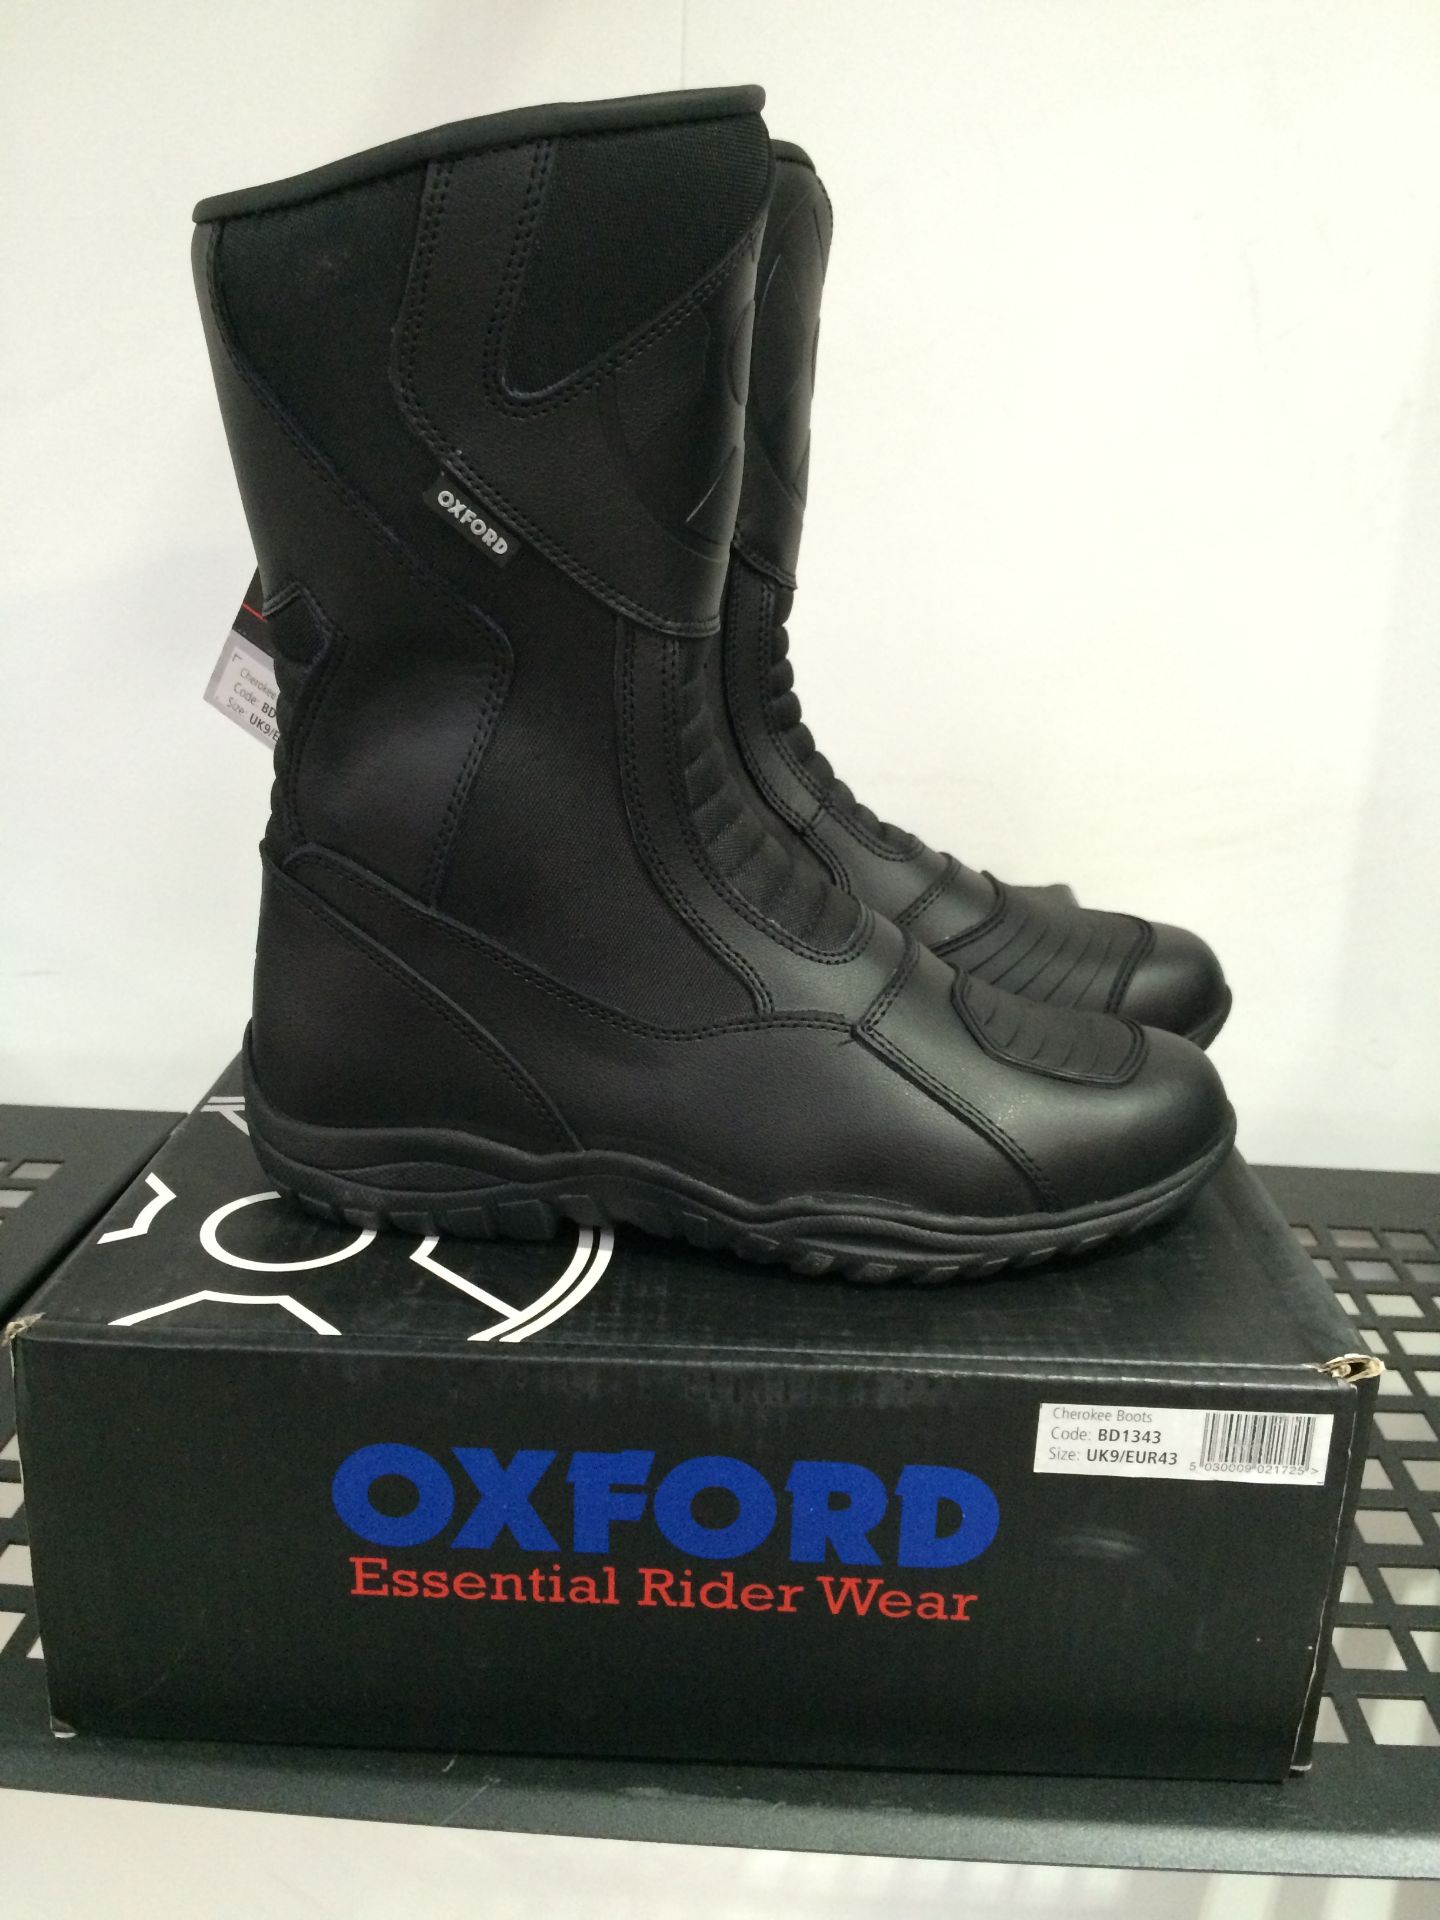 Oxford Cheroke BD1346 Boots. Size UK 9 (43)